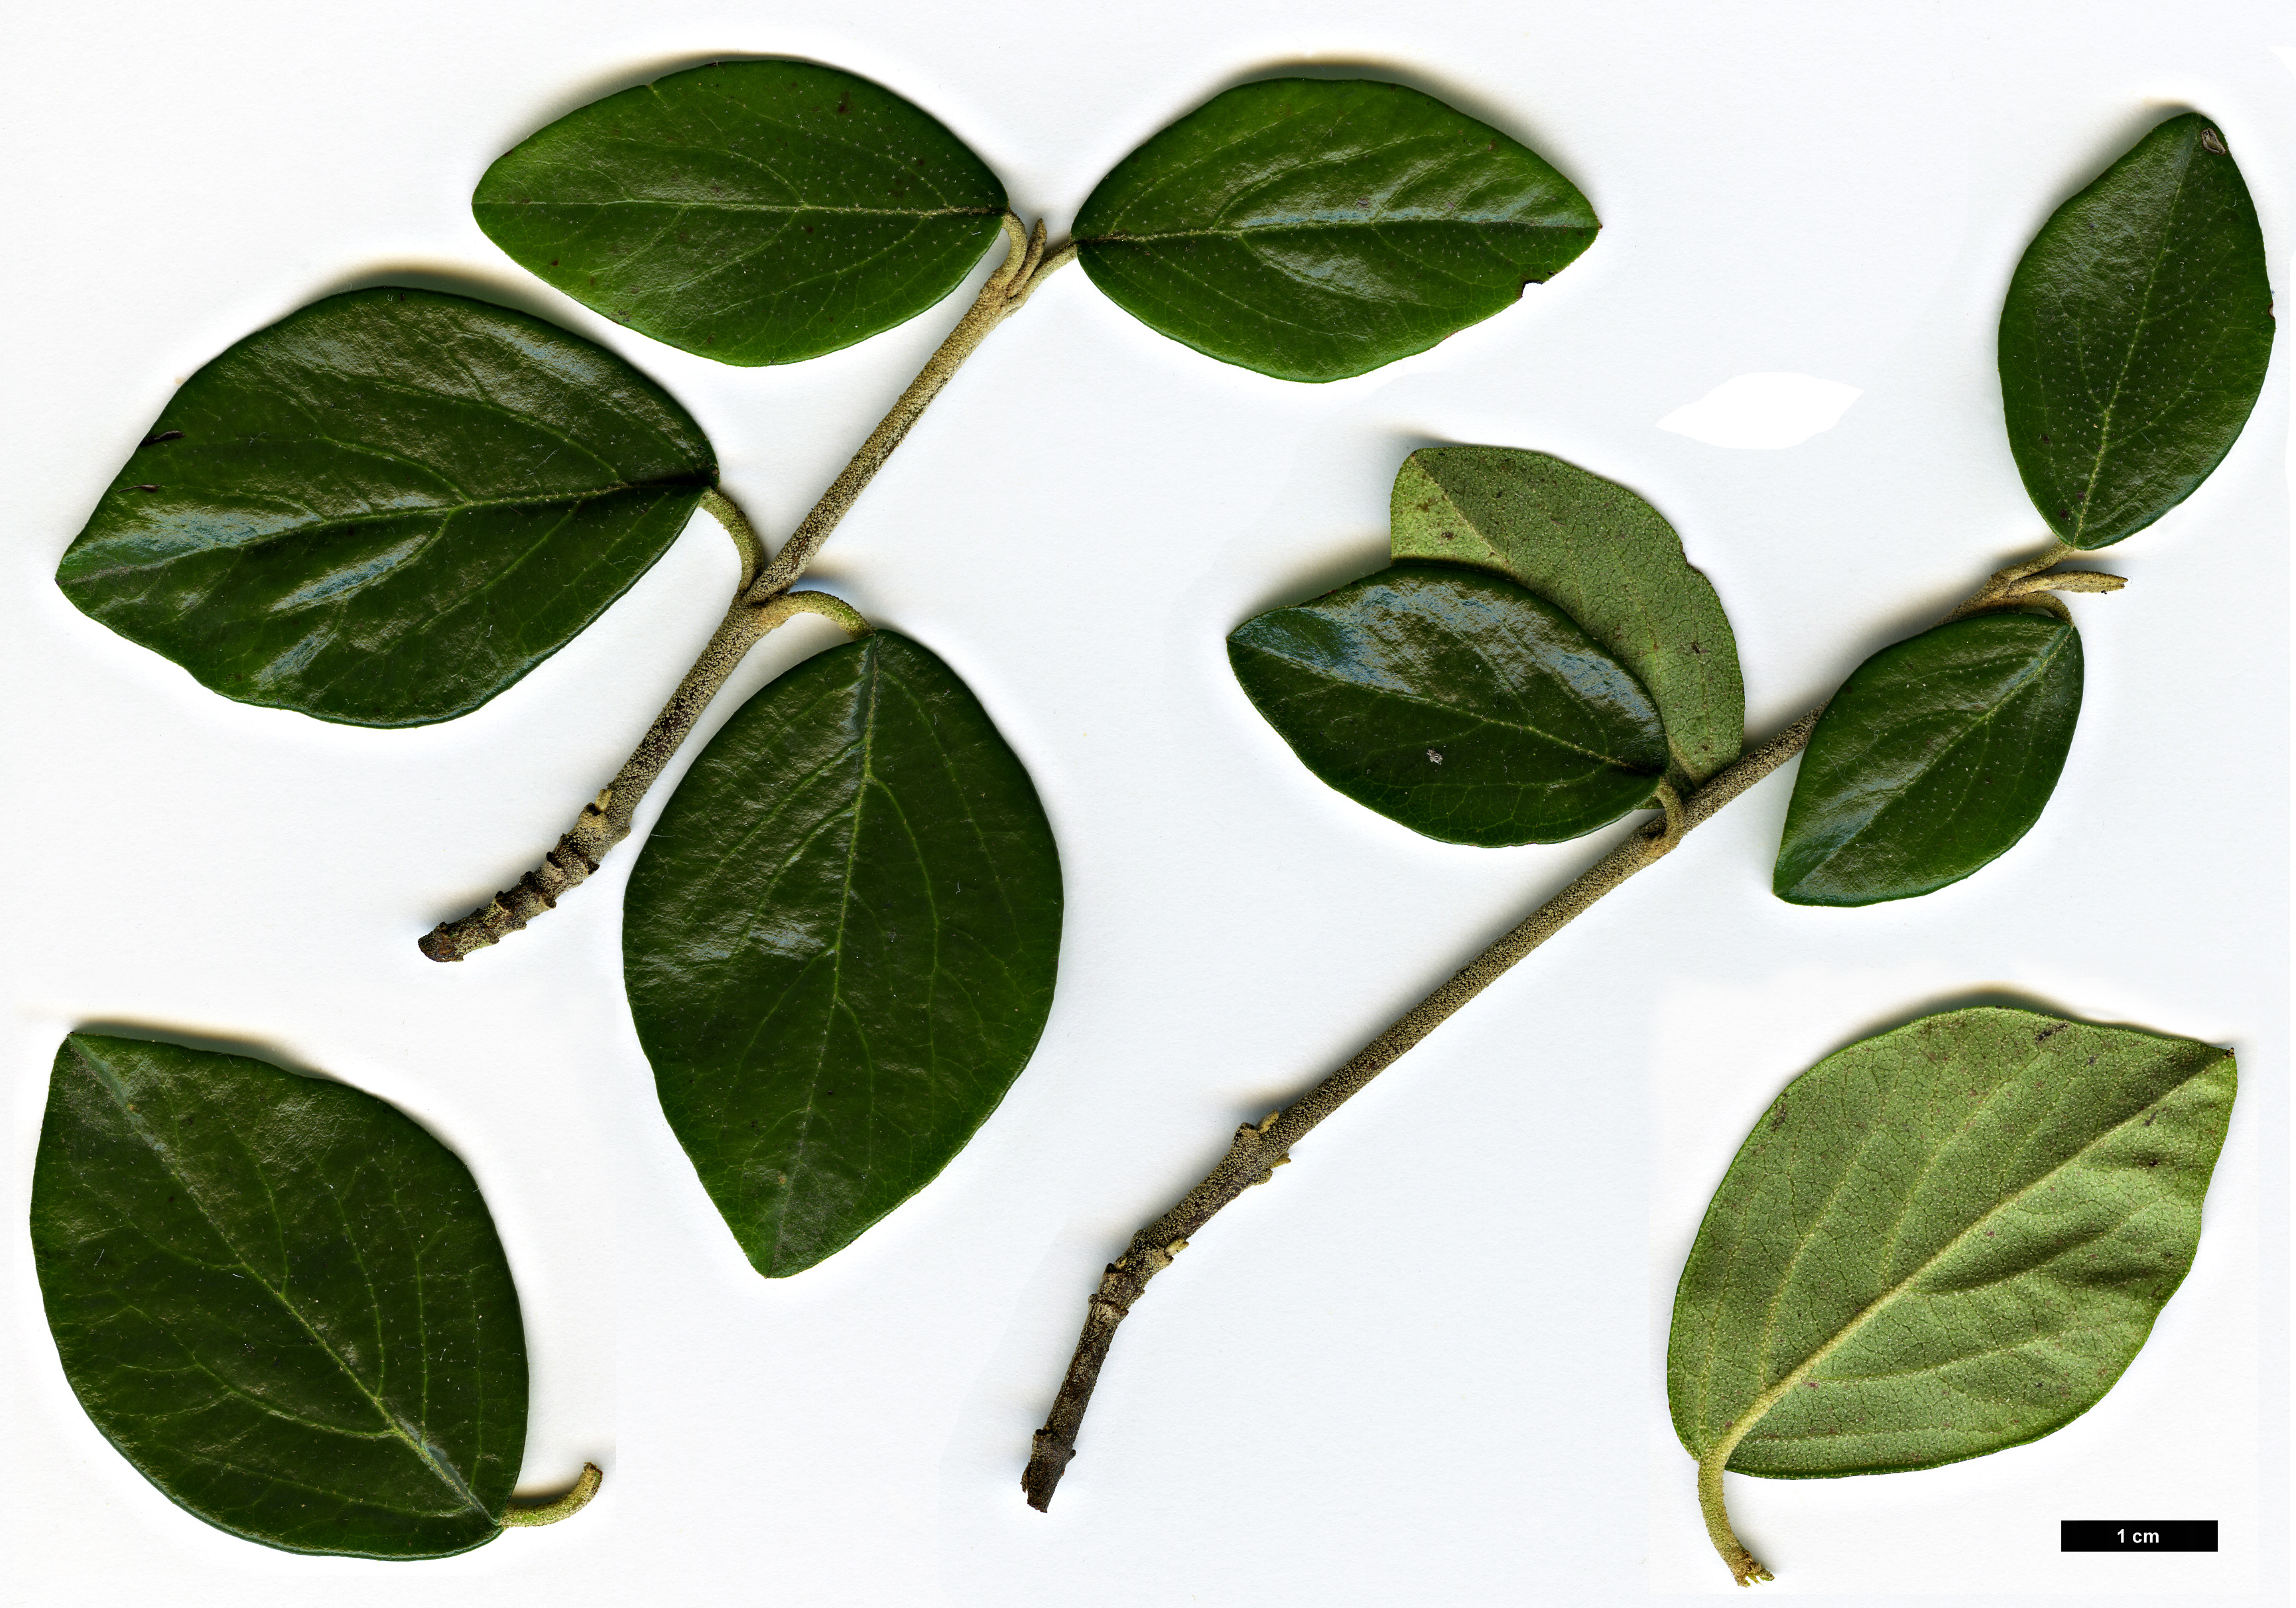 High resolution image: Family: Adoxaceae - Genus: Viburnum - Taxon: congestum